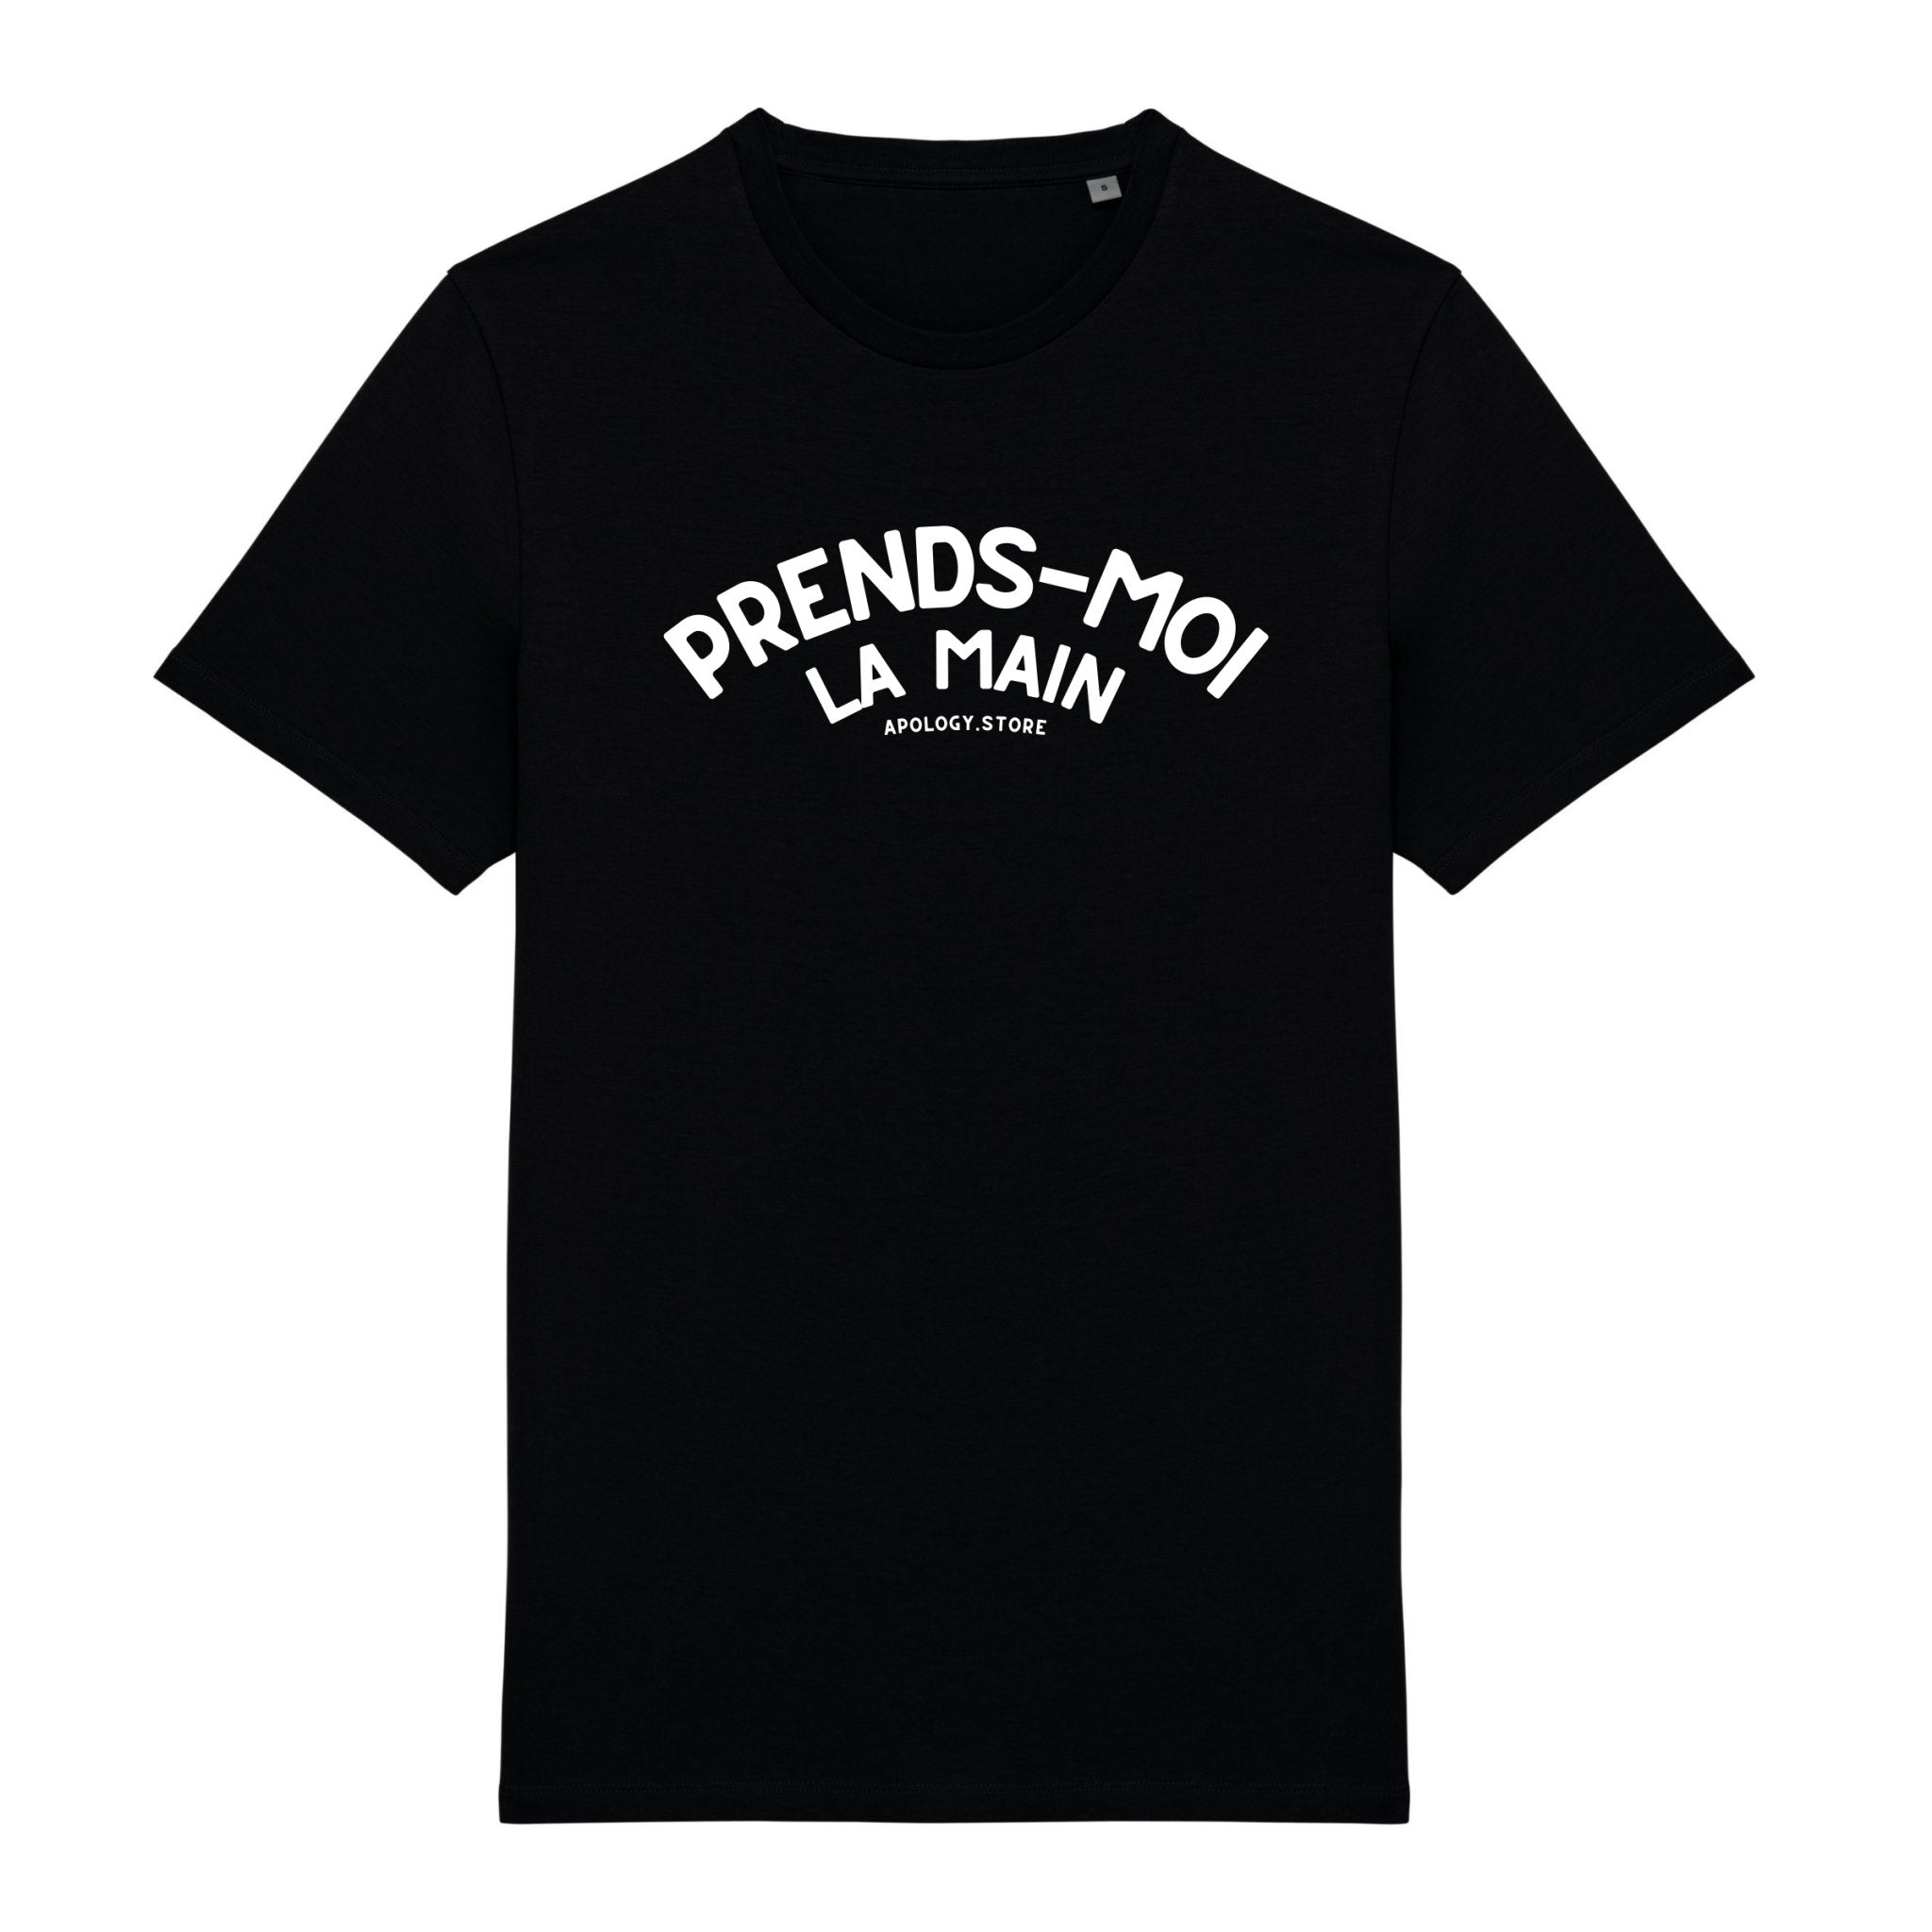 T-shirt Prends Moi La Main - Fabriqué au Portugal XS Noir - Imprimé en France